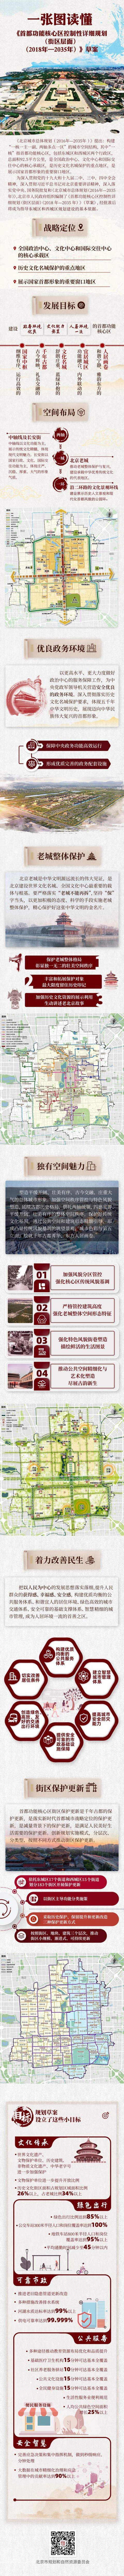 北京核心区规划公示